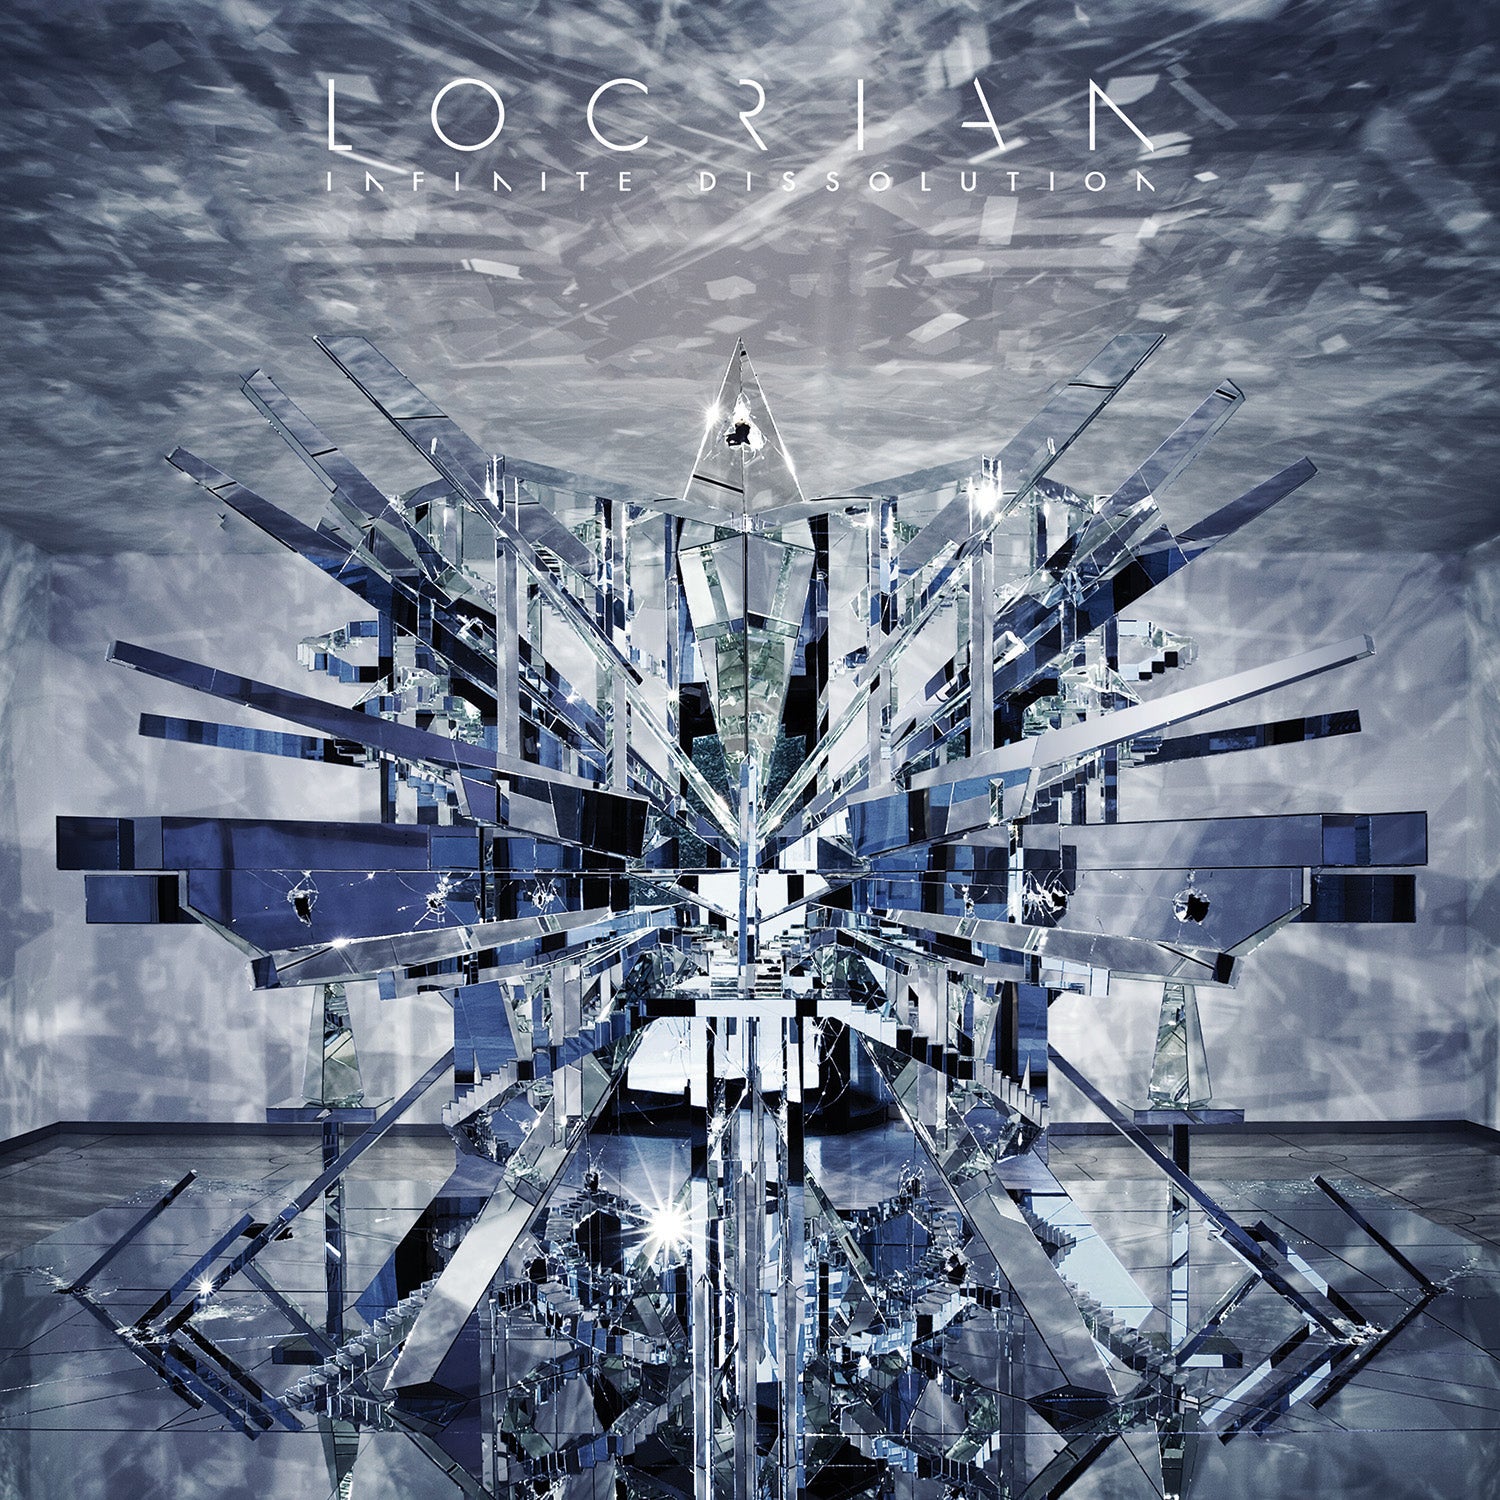 Locrian "Infinite Dissolution" CD